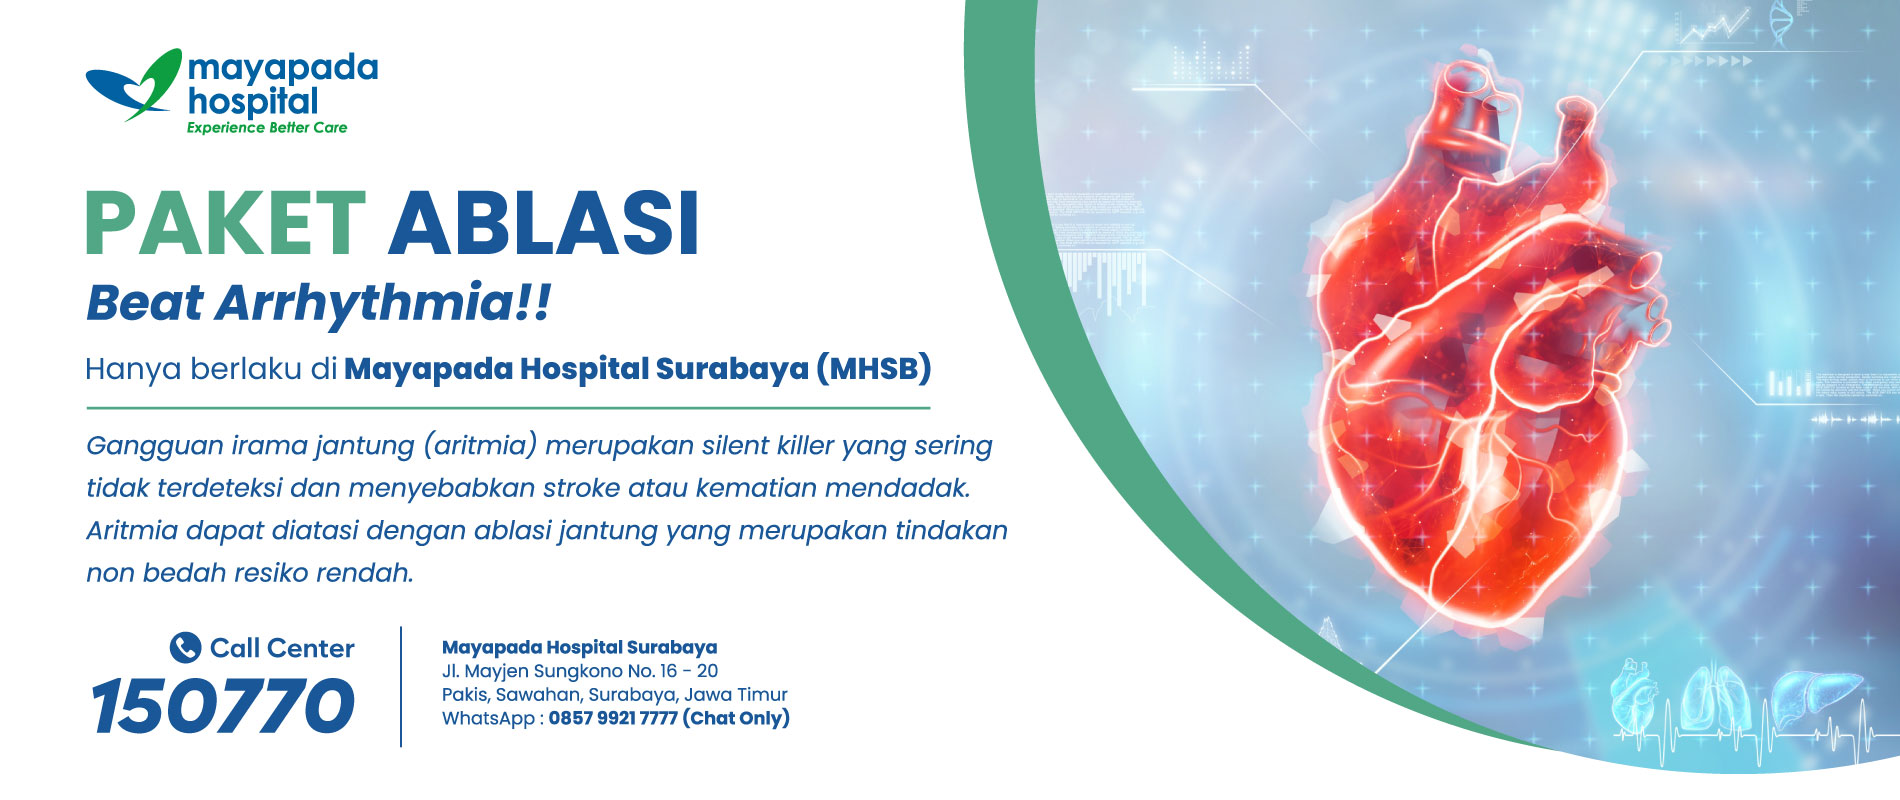 Paket Promo Ablasi Jantung Mayapada Hospital Surabaya (MHSB) IMG